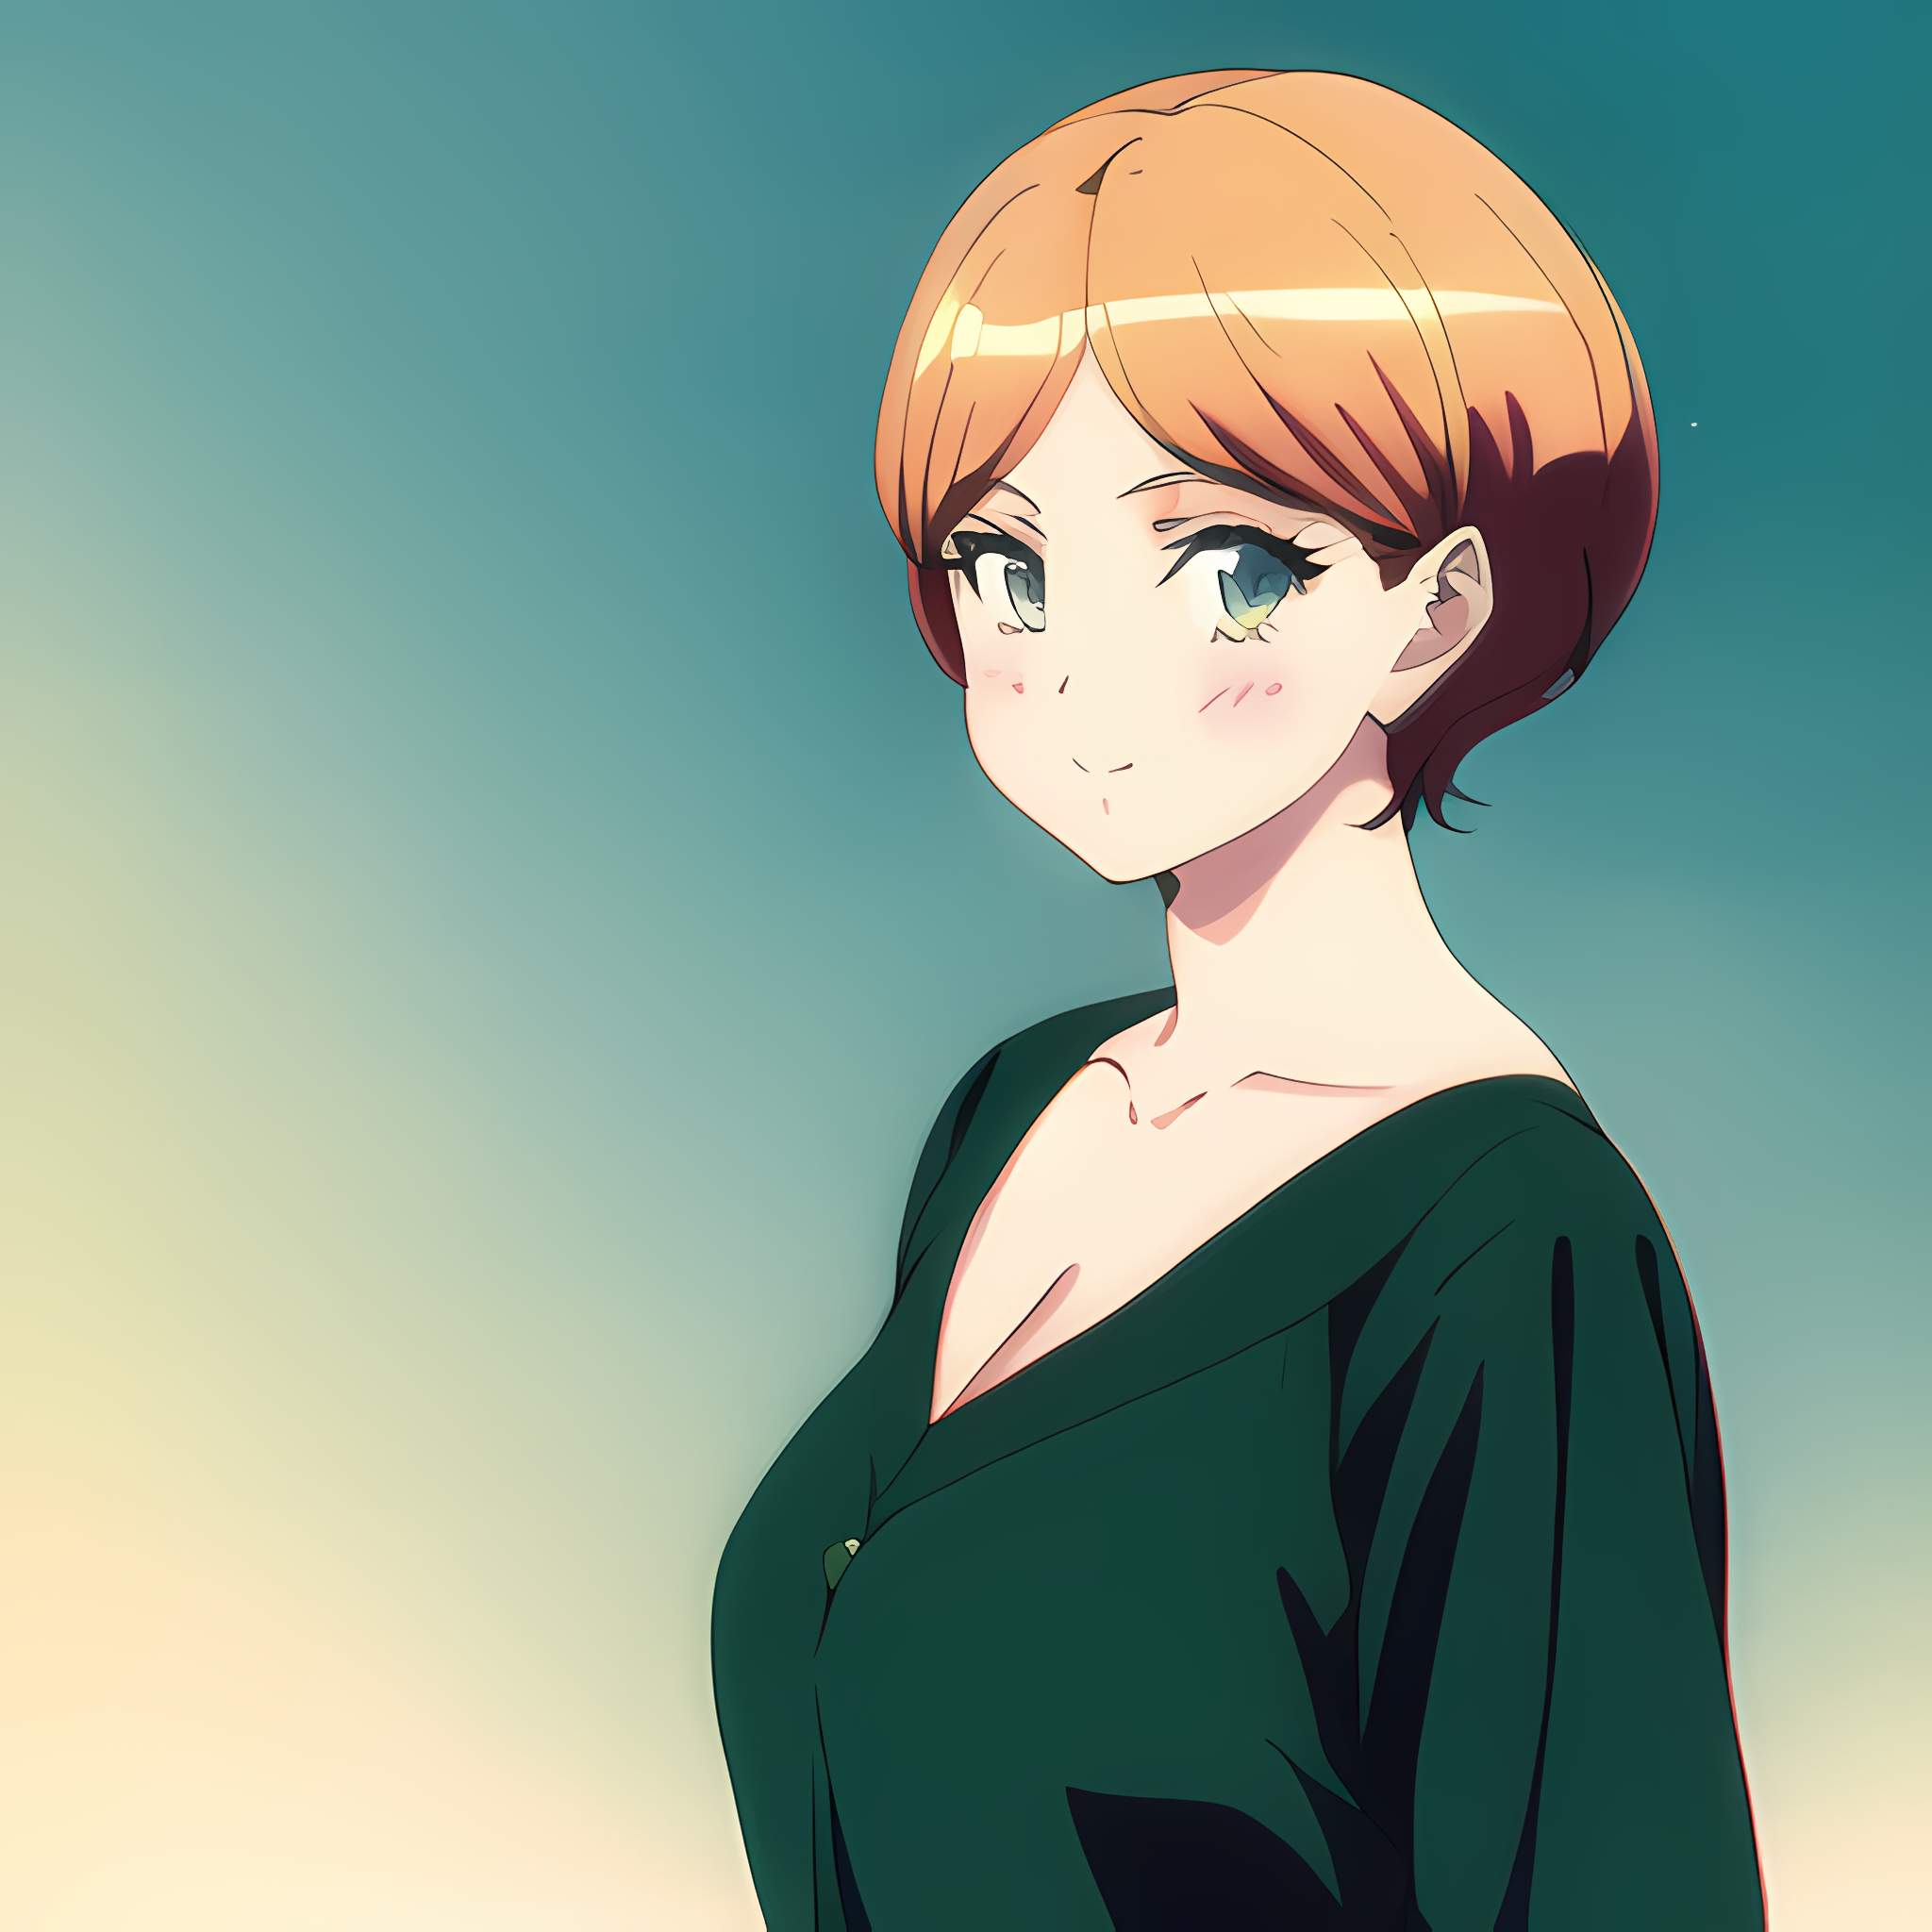 Anime Girl Cartoon Character Blonde Hair Stock Illustration 1608874864   Shutterstock